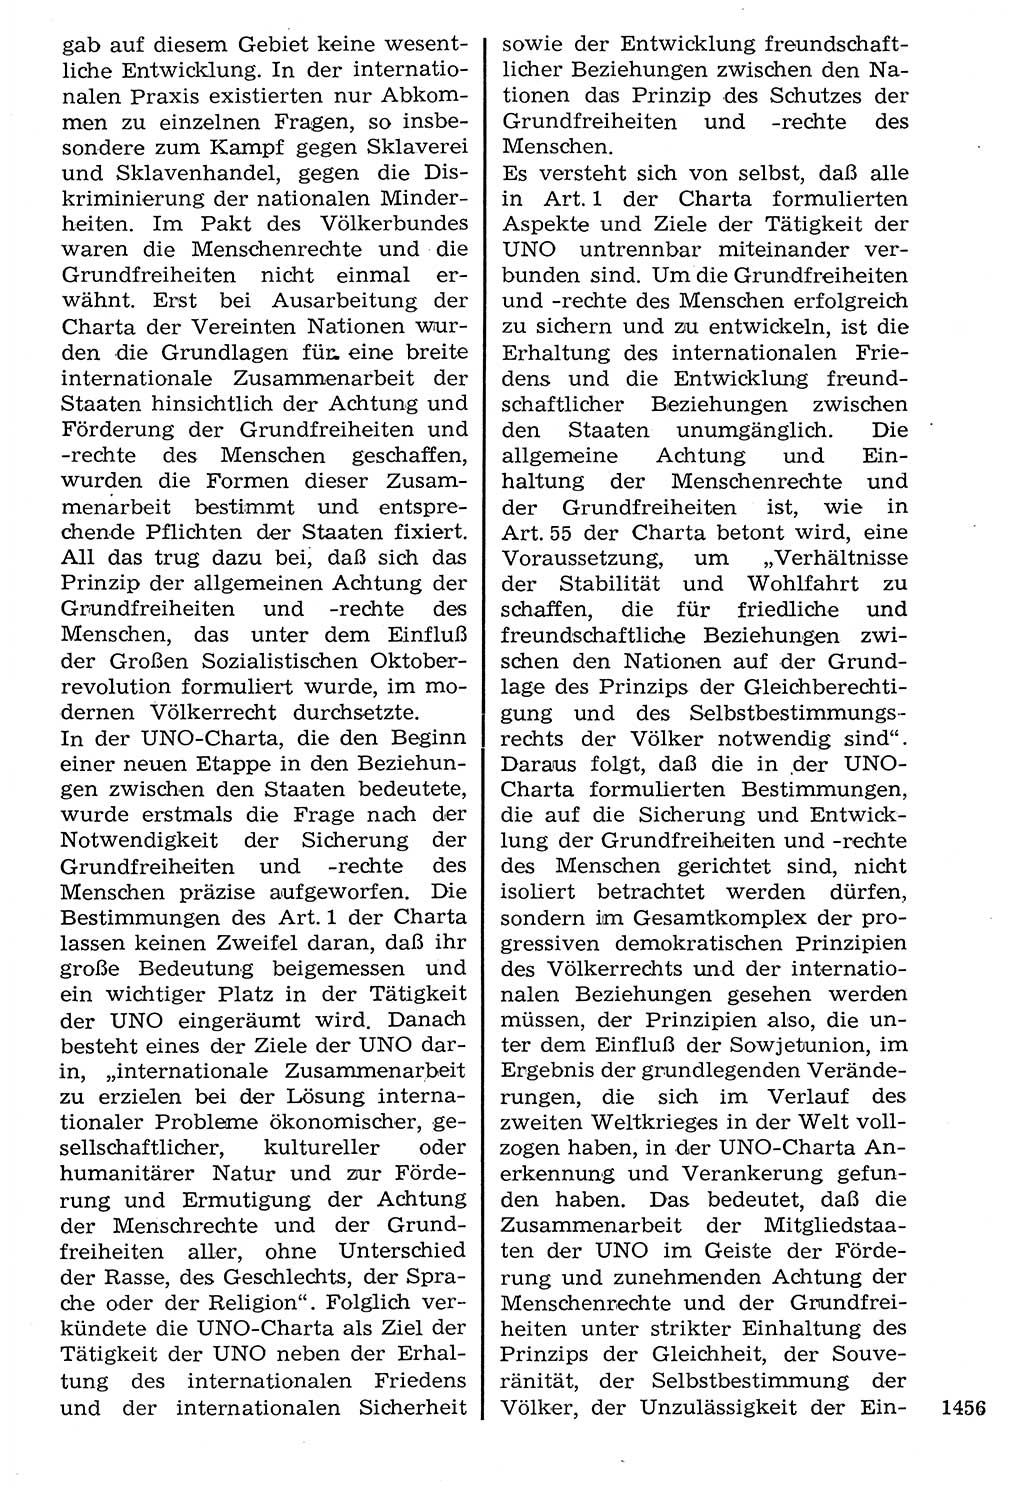 Staat und Recht (StuR), 17. Jahrgang [Deutsche Demokratische Republik (DDR)] 1968, Seite 1456 (StuR DDR 1968, S. 1456)